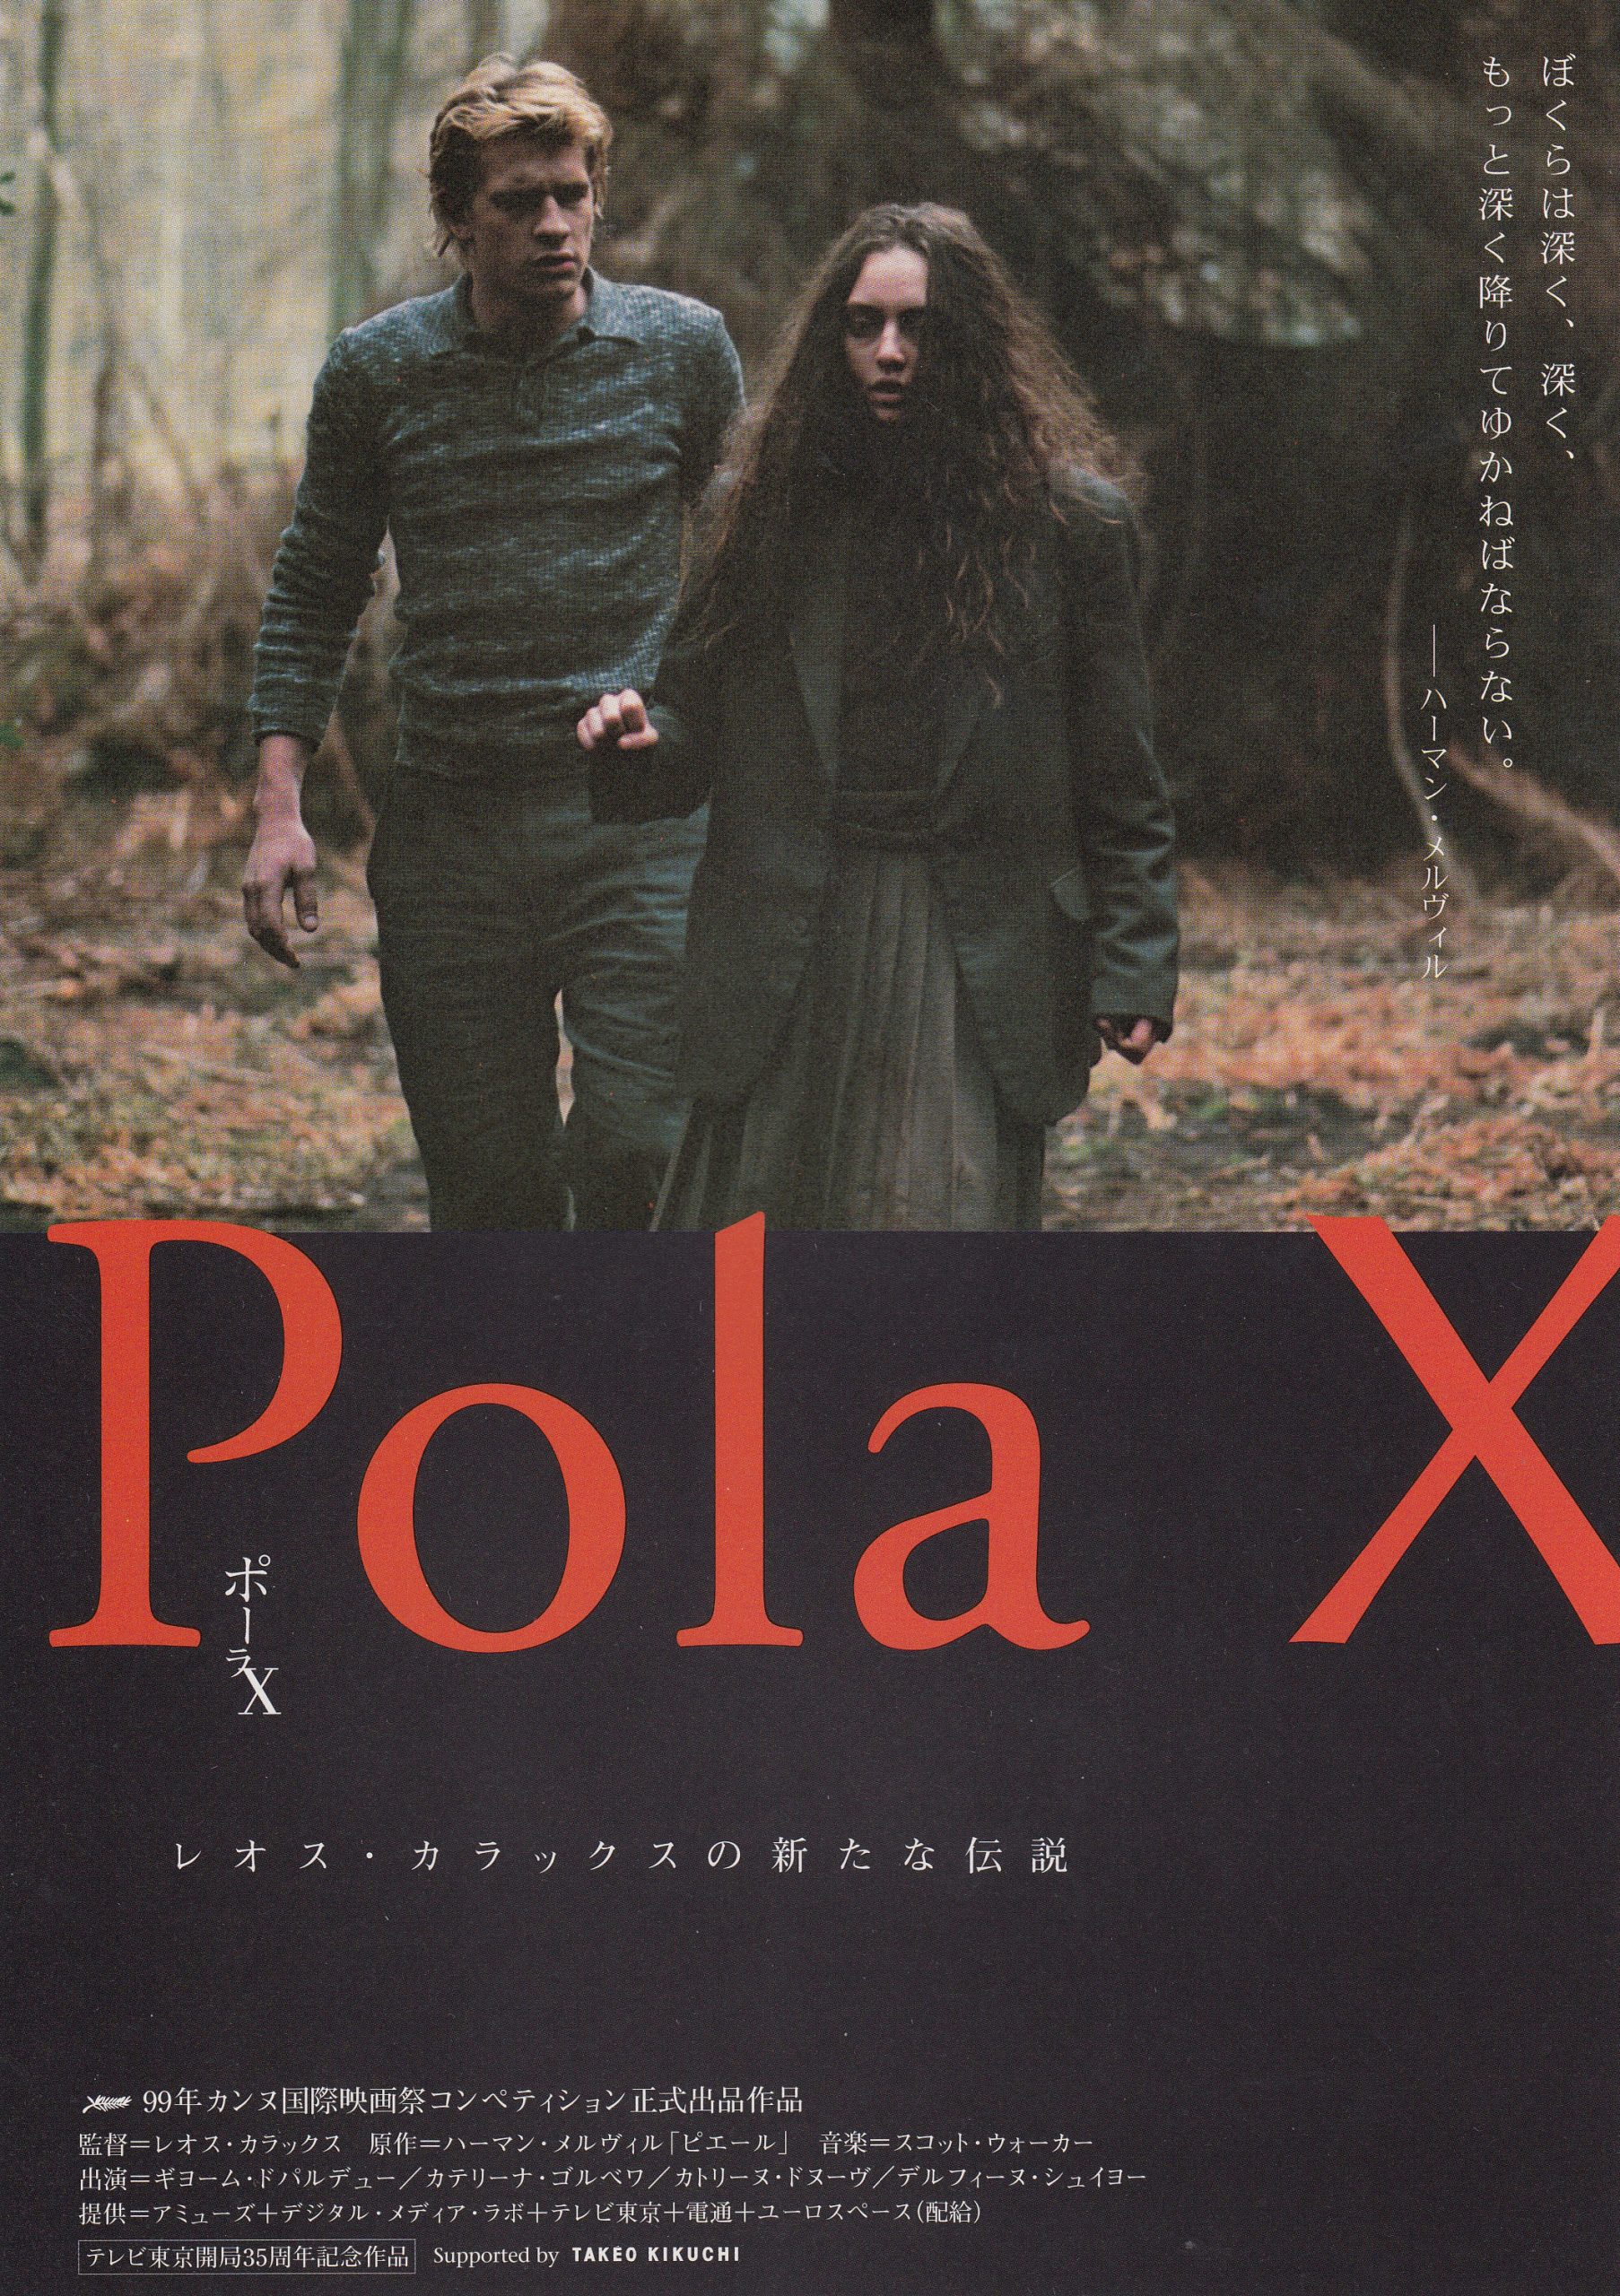 ポーラX('99仏/独/スイス/日本) - 外国映画